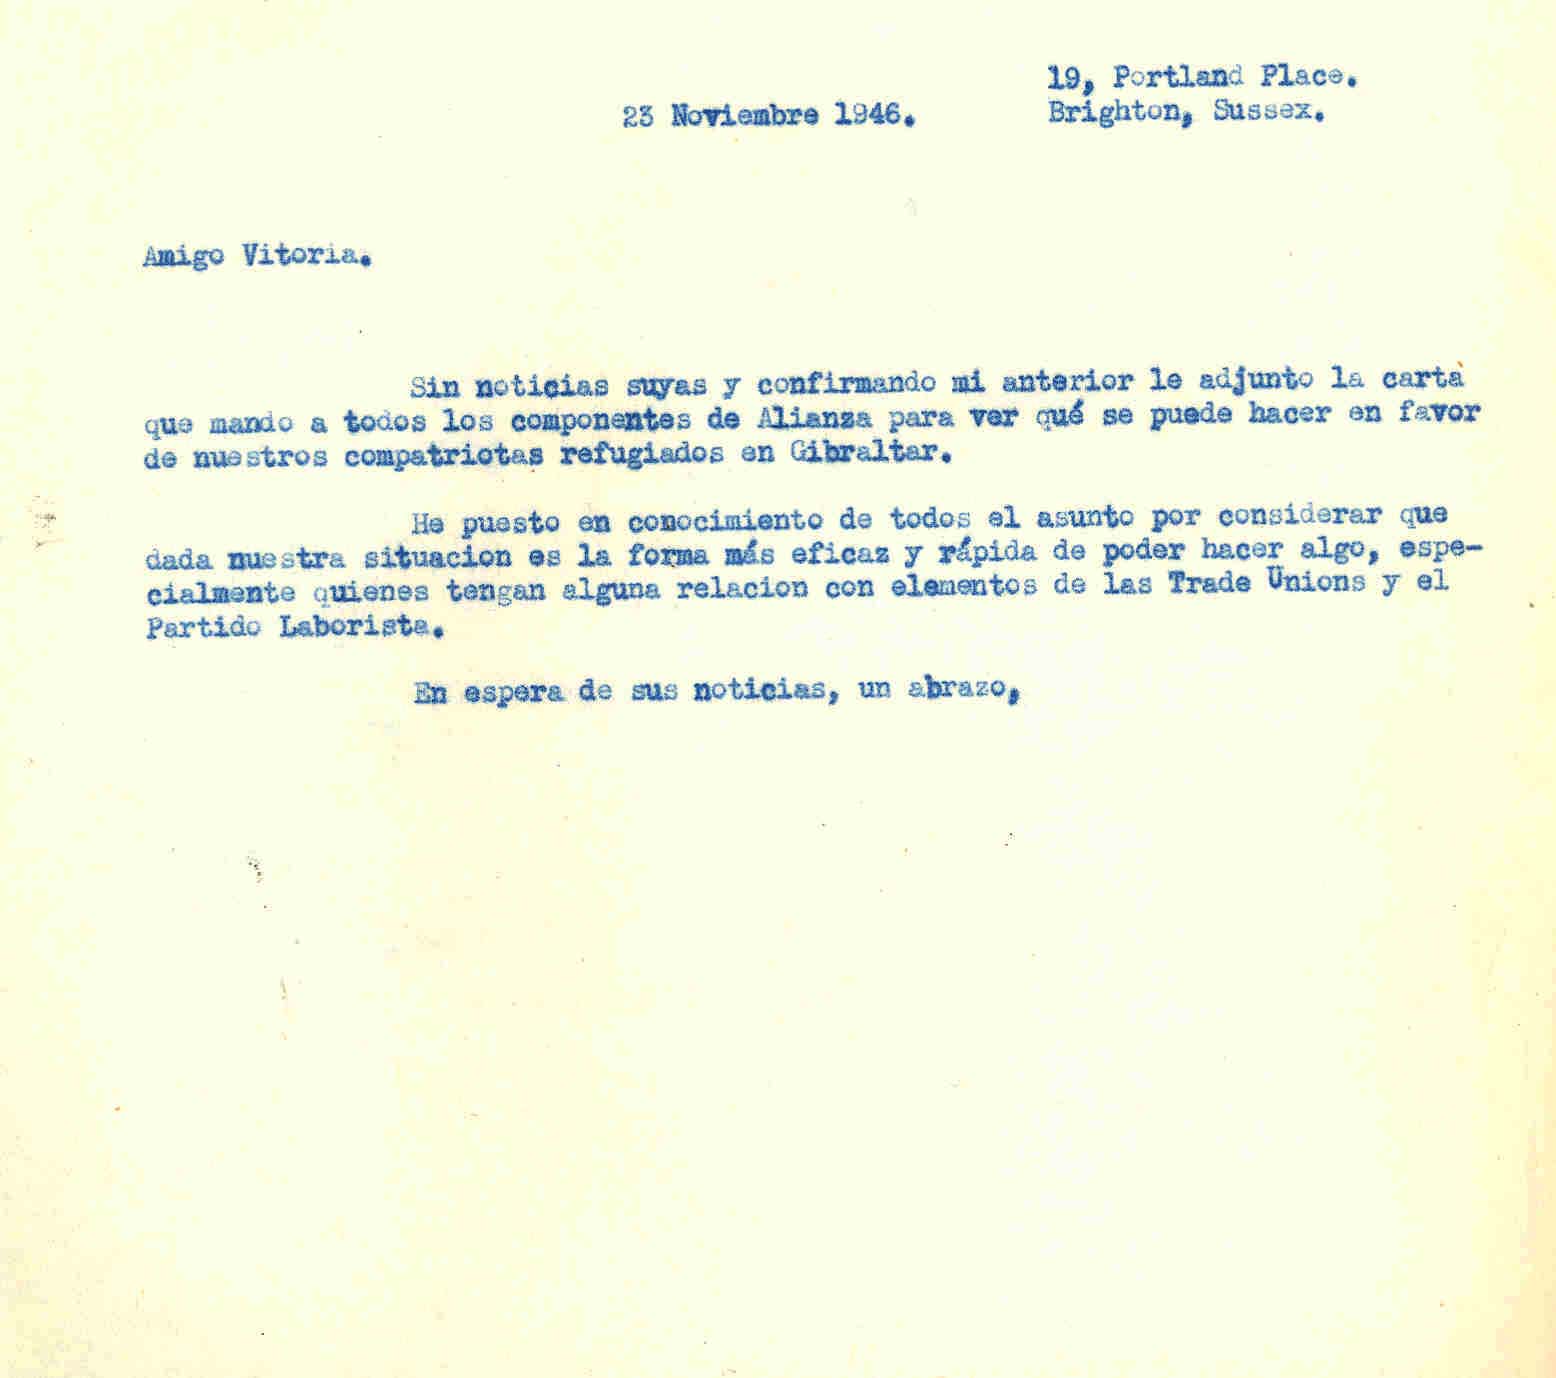 Carta a Roque Victoria con la que adjuntó carta a todos los componentes de la Alianza para ver qué se podía hacer en favor de los compatriotas refugiados en Gibraltar.